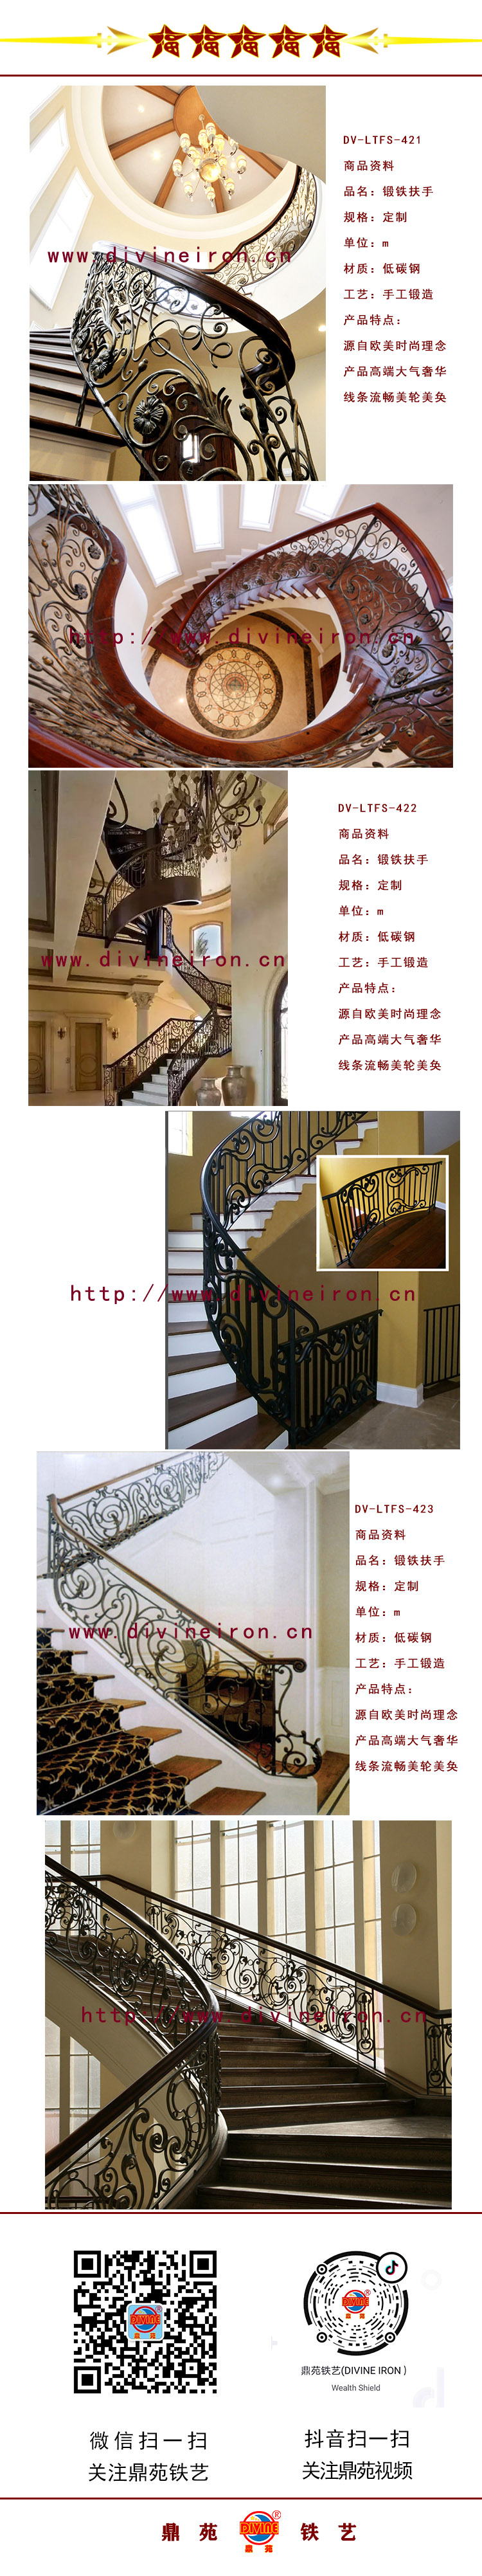 樓梯扶手詳圖1-4.jpg